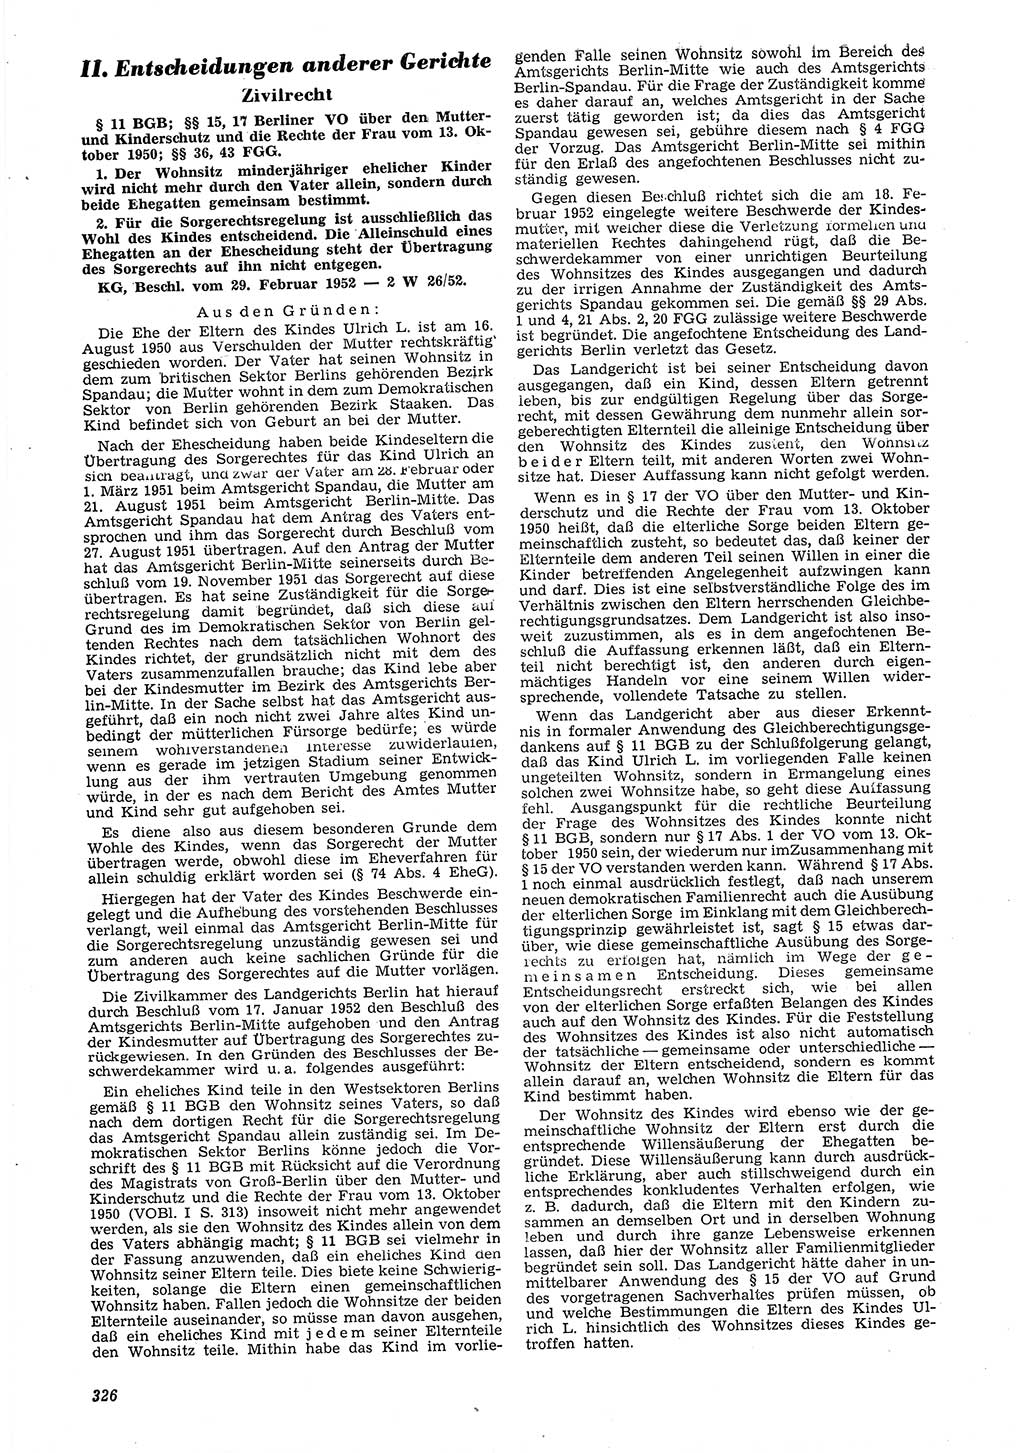 Neue Justiz (NJ), Zeitschrift für Recht und Rechtswissenschaft [Deutsche Demokratische Republik (DDR)], 6. Jahrgang 1952, Seite 326 (NJ DDR 1952, S. 326)